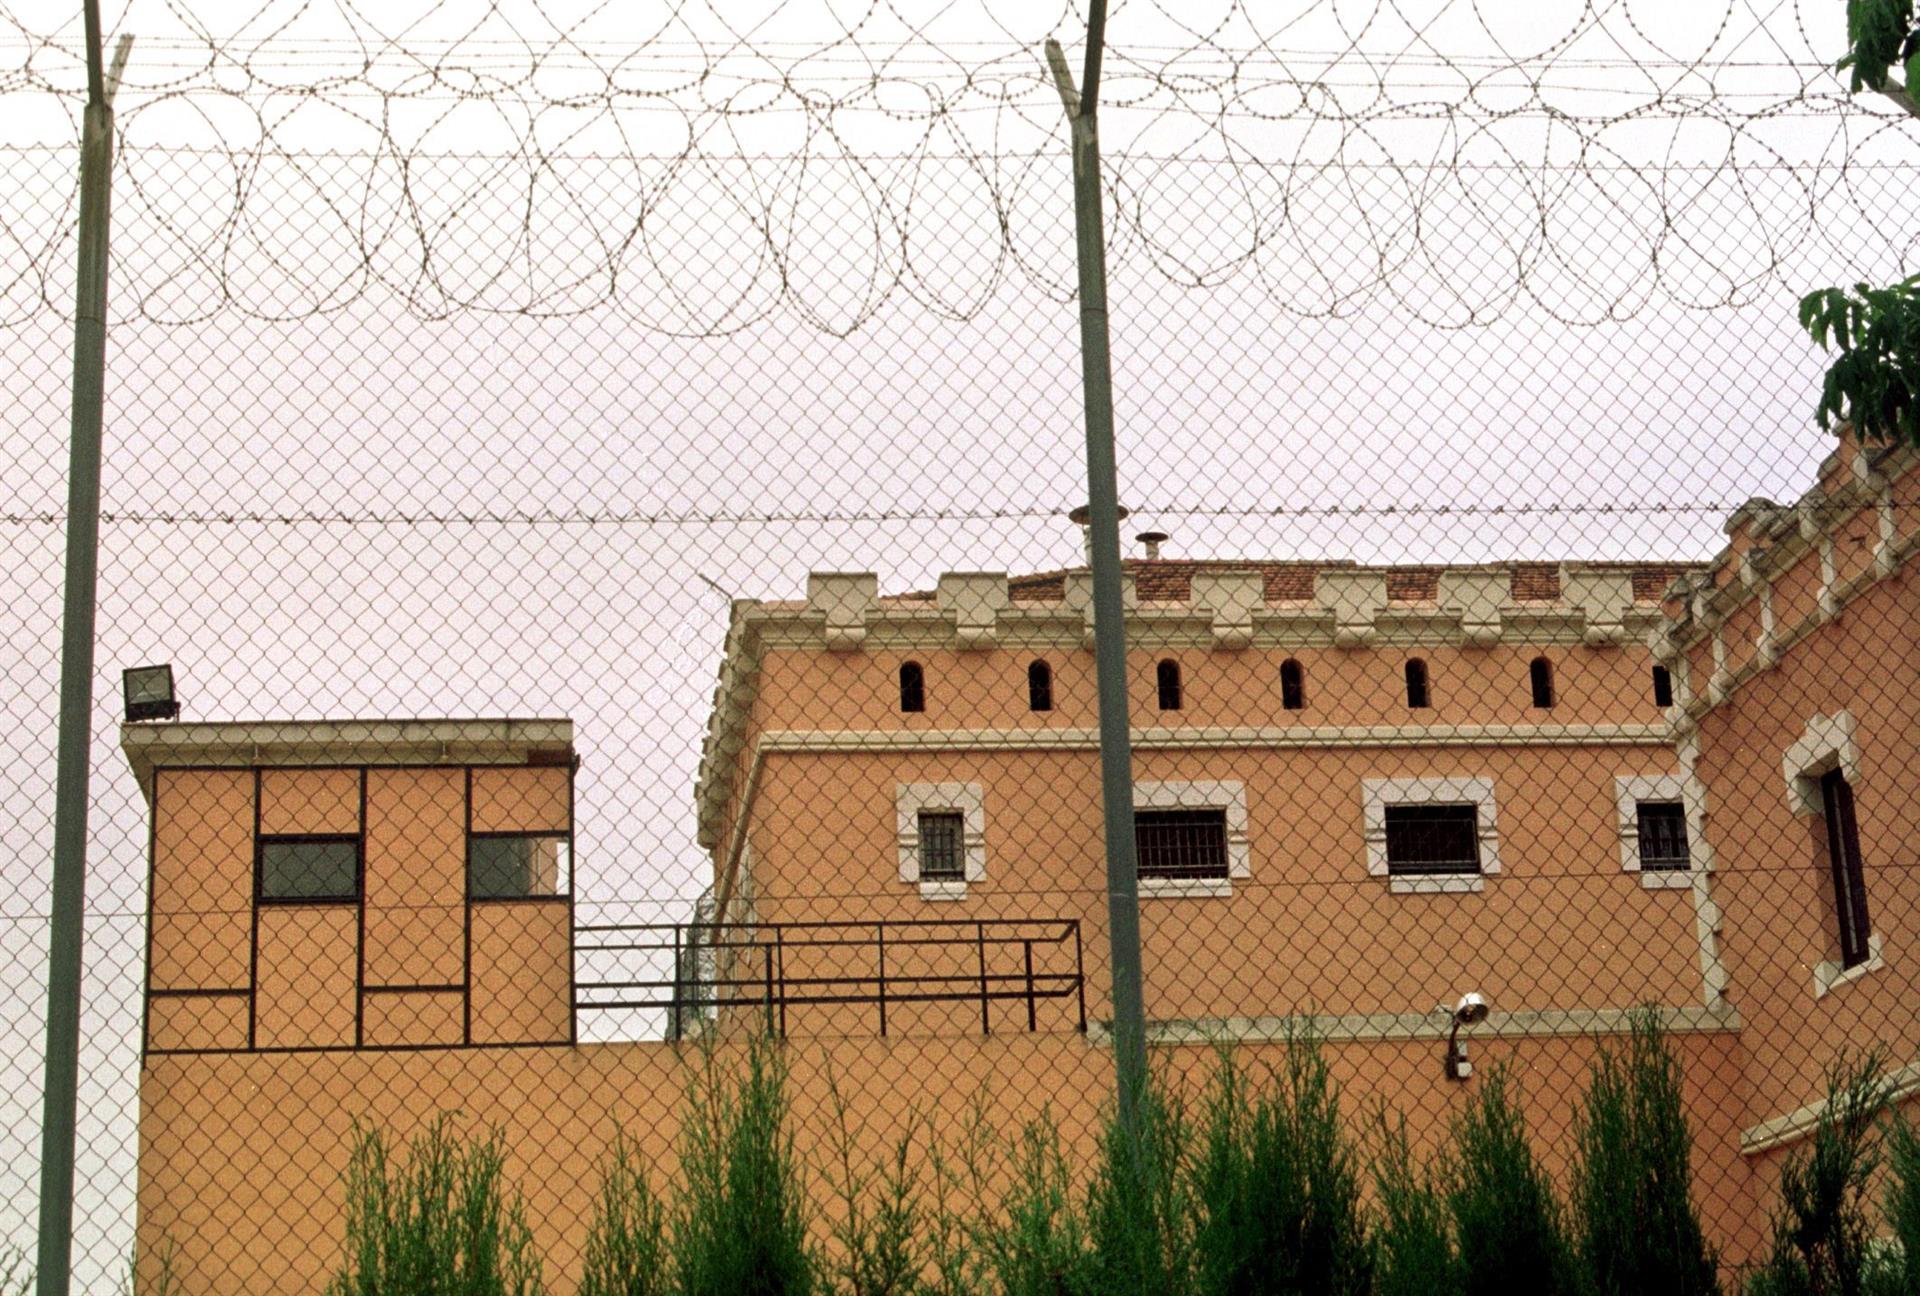 Foto de archivo de un centro penitenciario. EFE